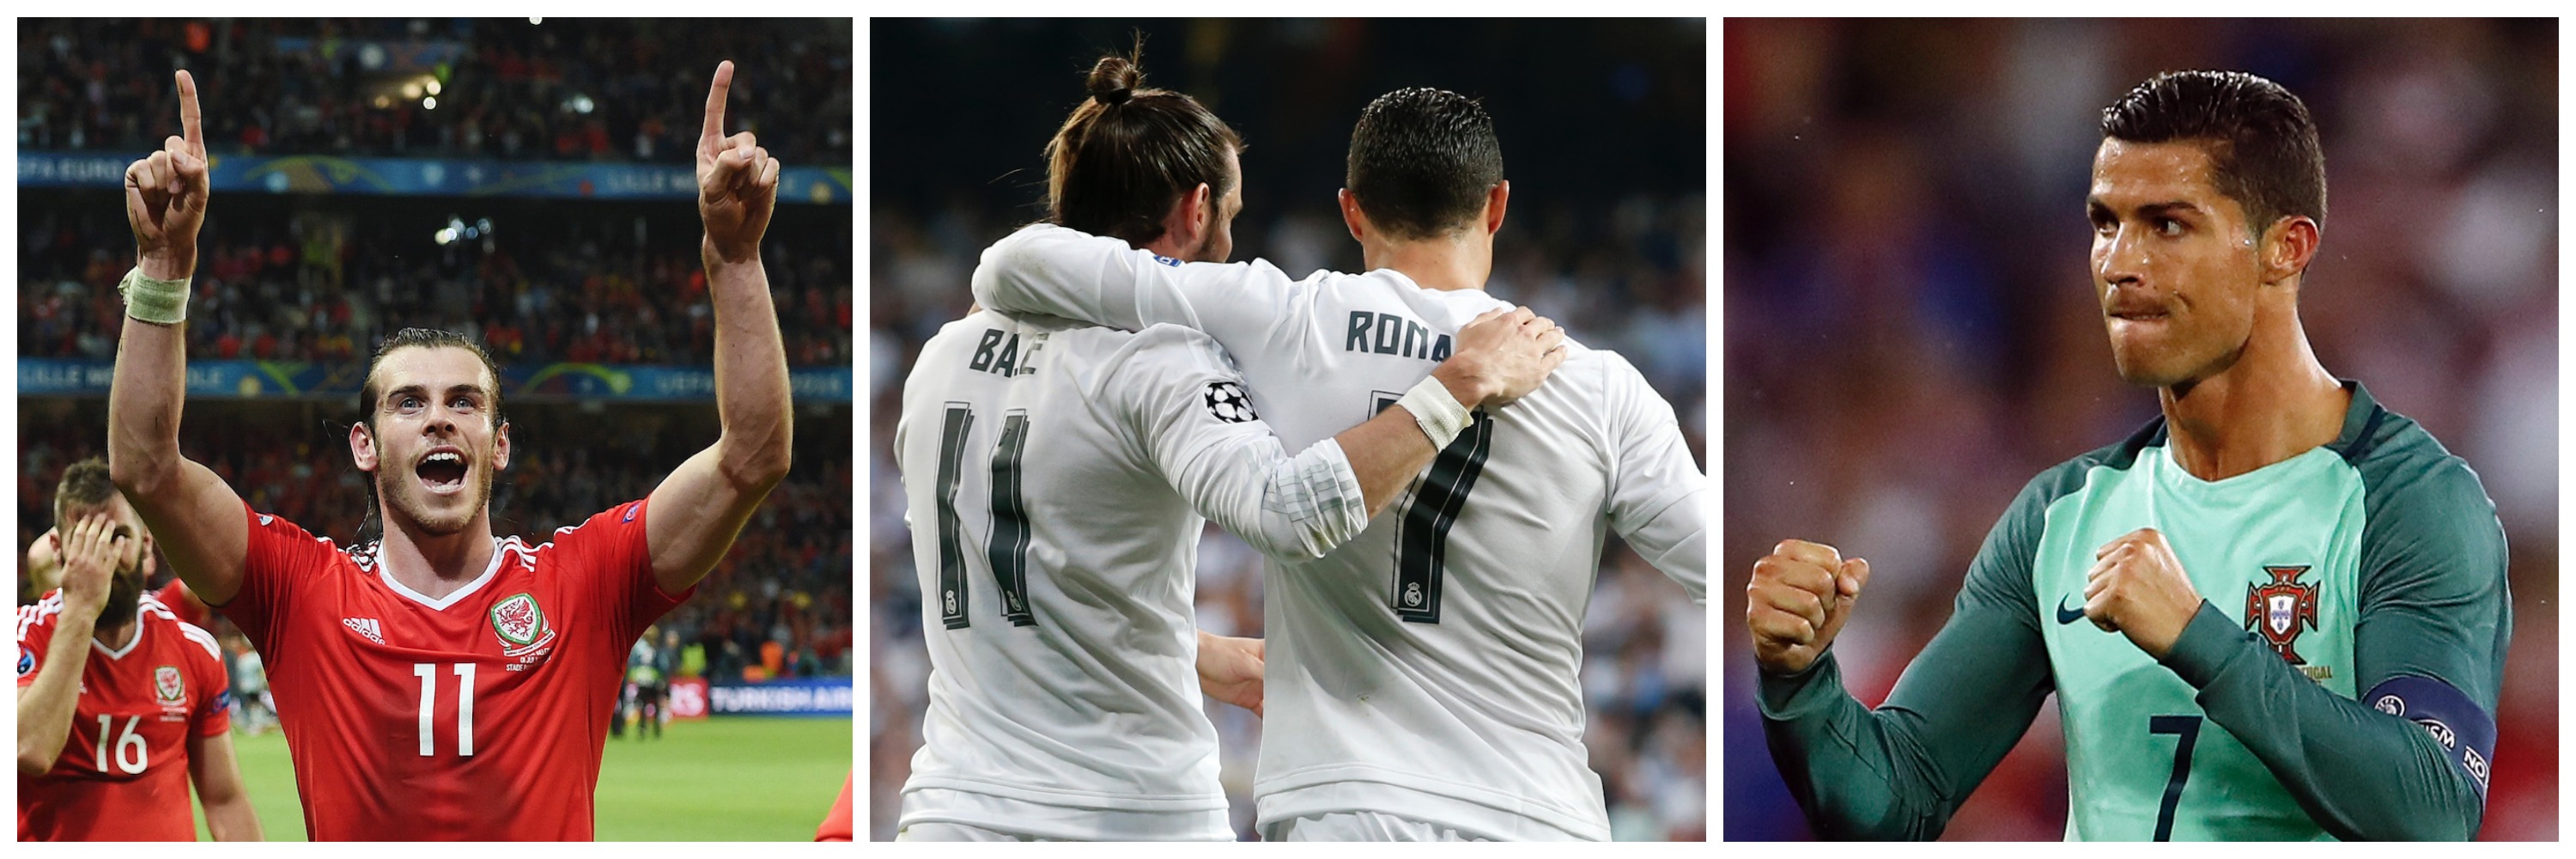 Gareth Bale, Fotbolls-EM, Cristiano Ronaldo